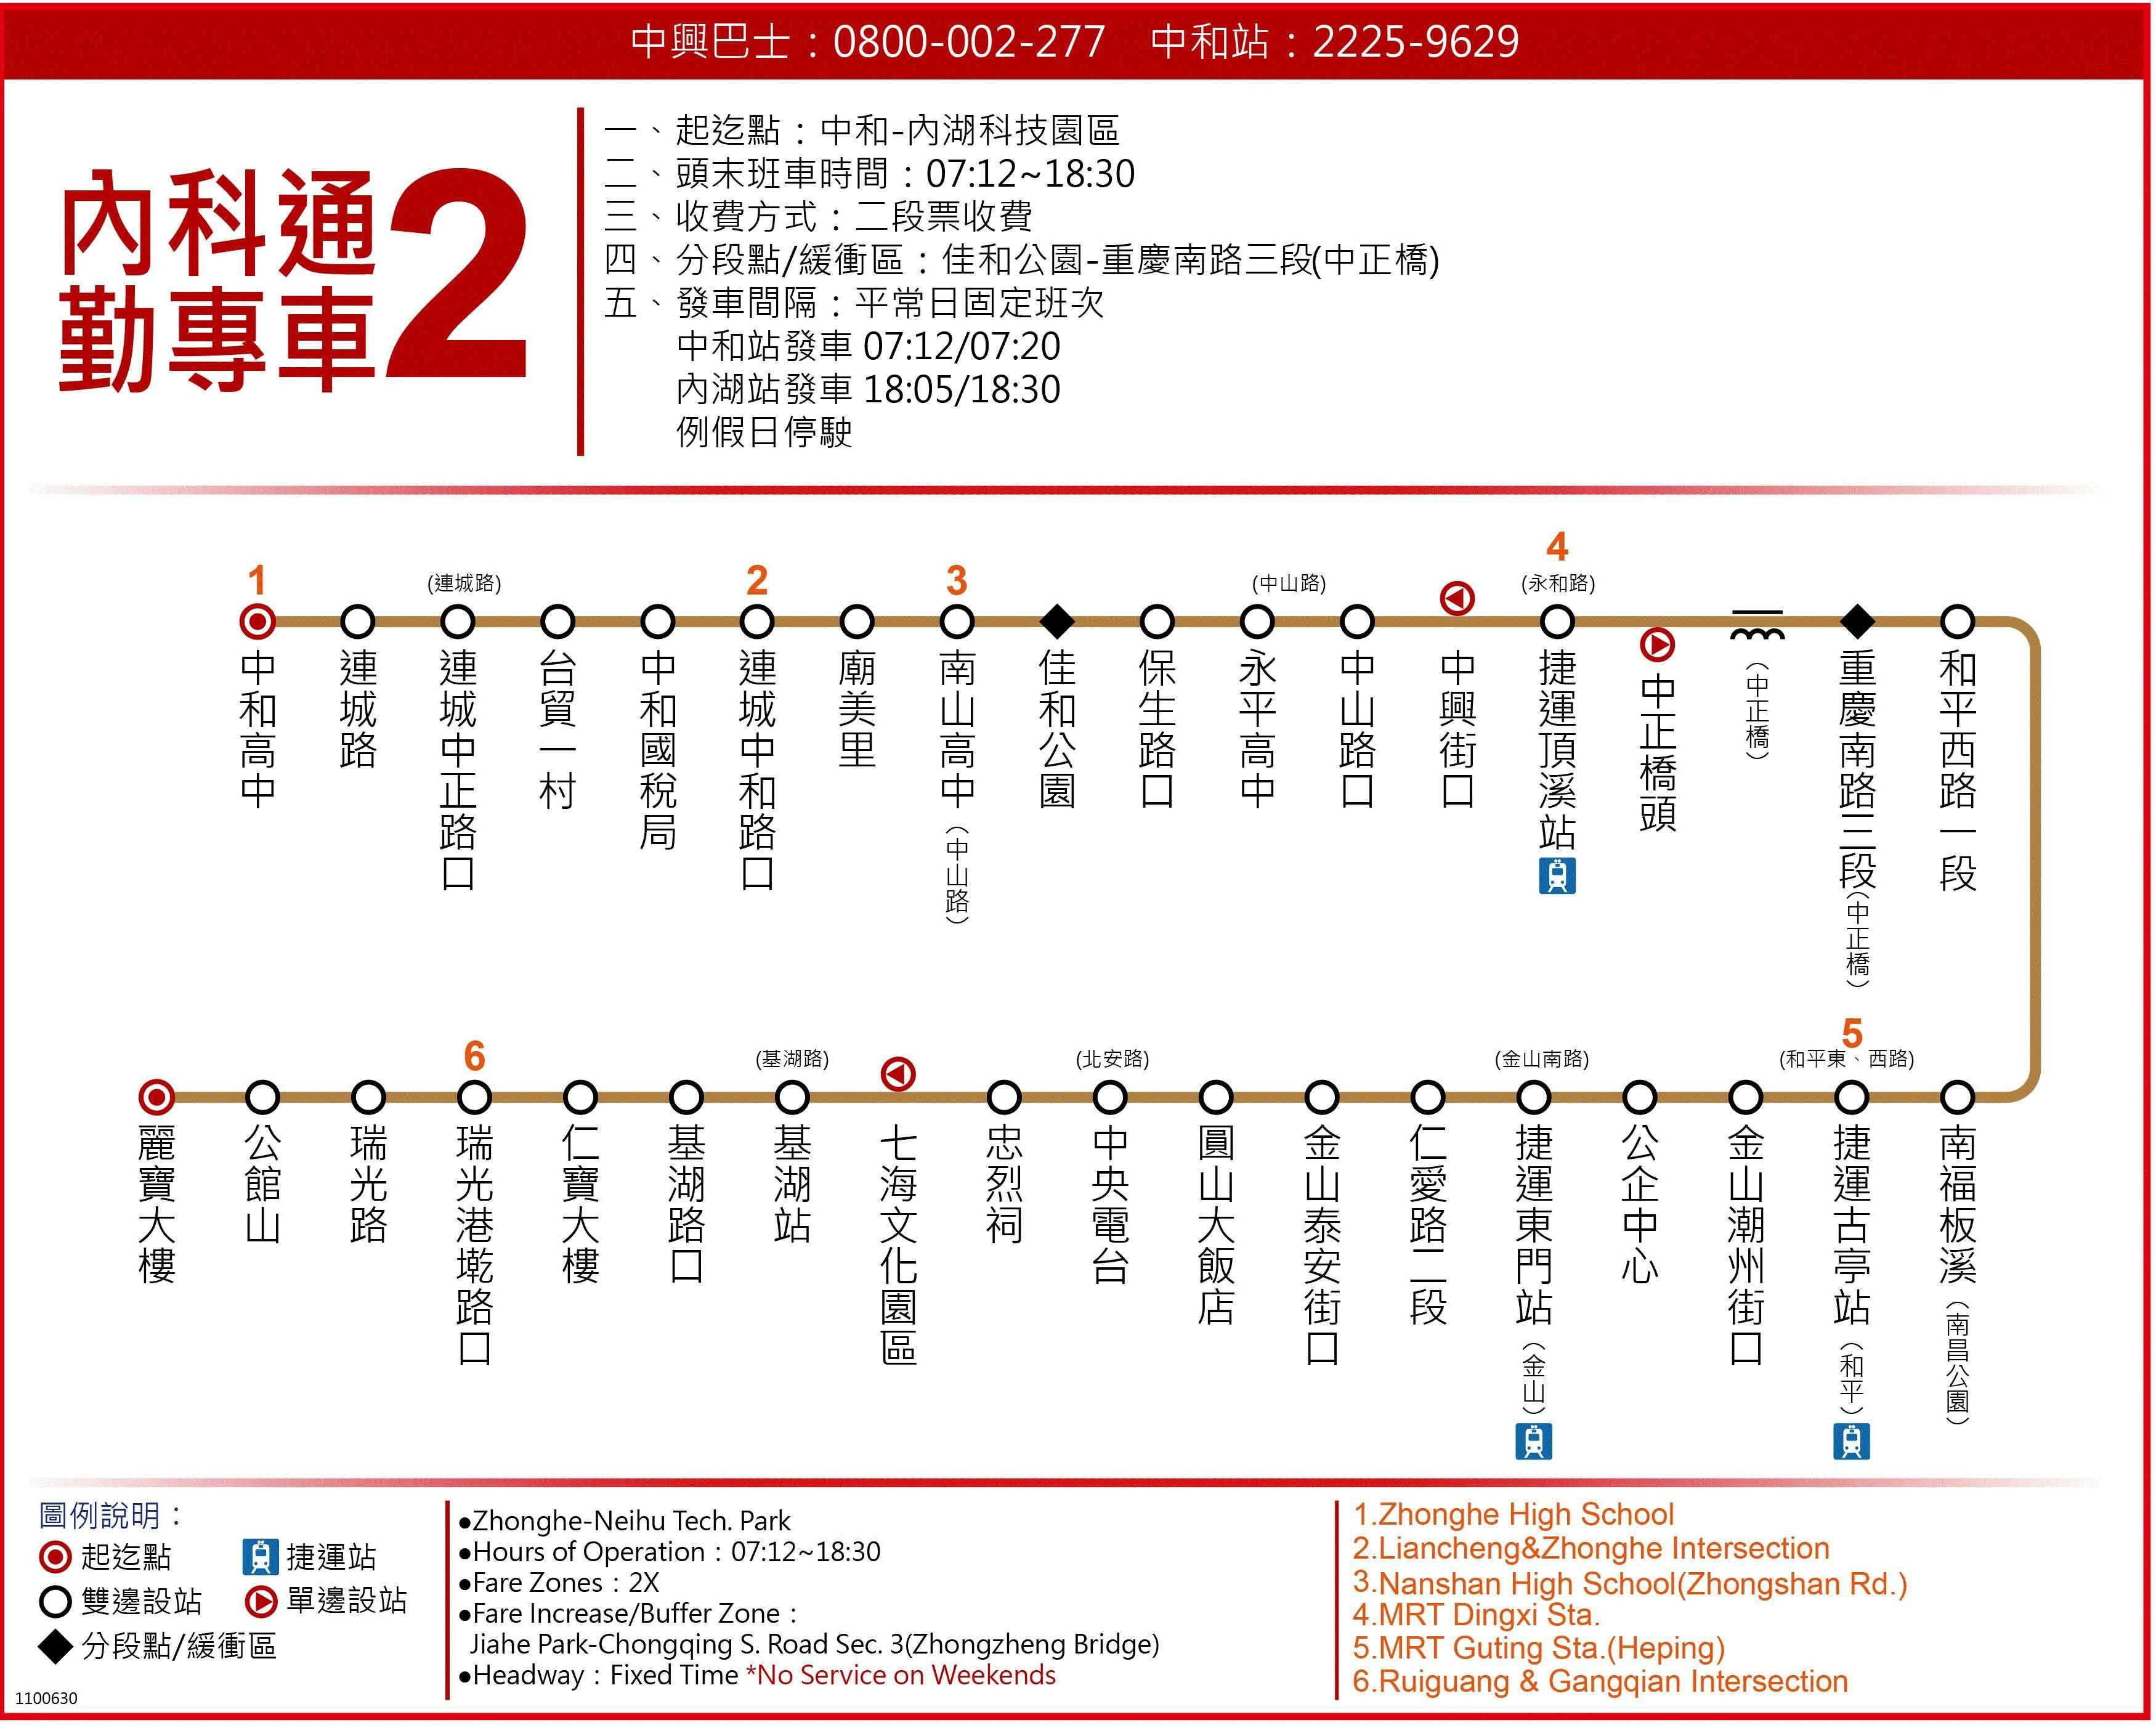 內科通勤專車2路線圖-台北市公車